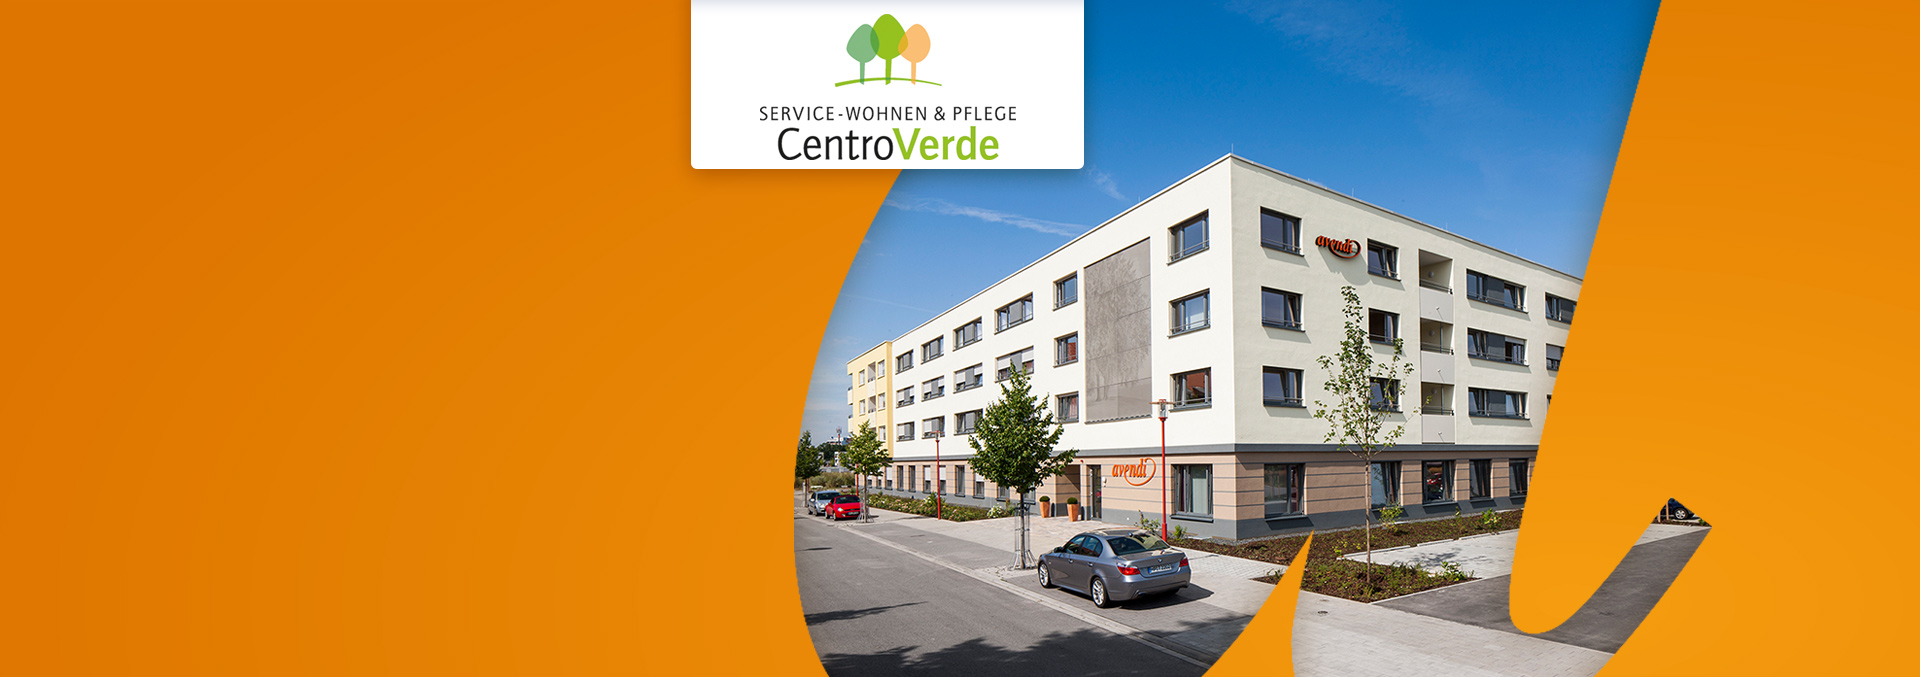 Service-Wohnen und Pflege CentroVerde: Außenansicht mit Blick auf den Eingang, vierstöckiges Gebäude, großzügige Parkflächen